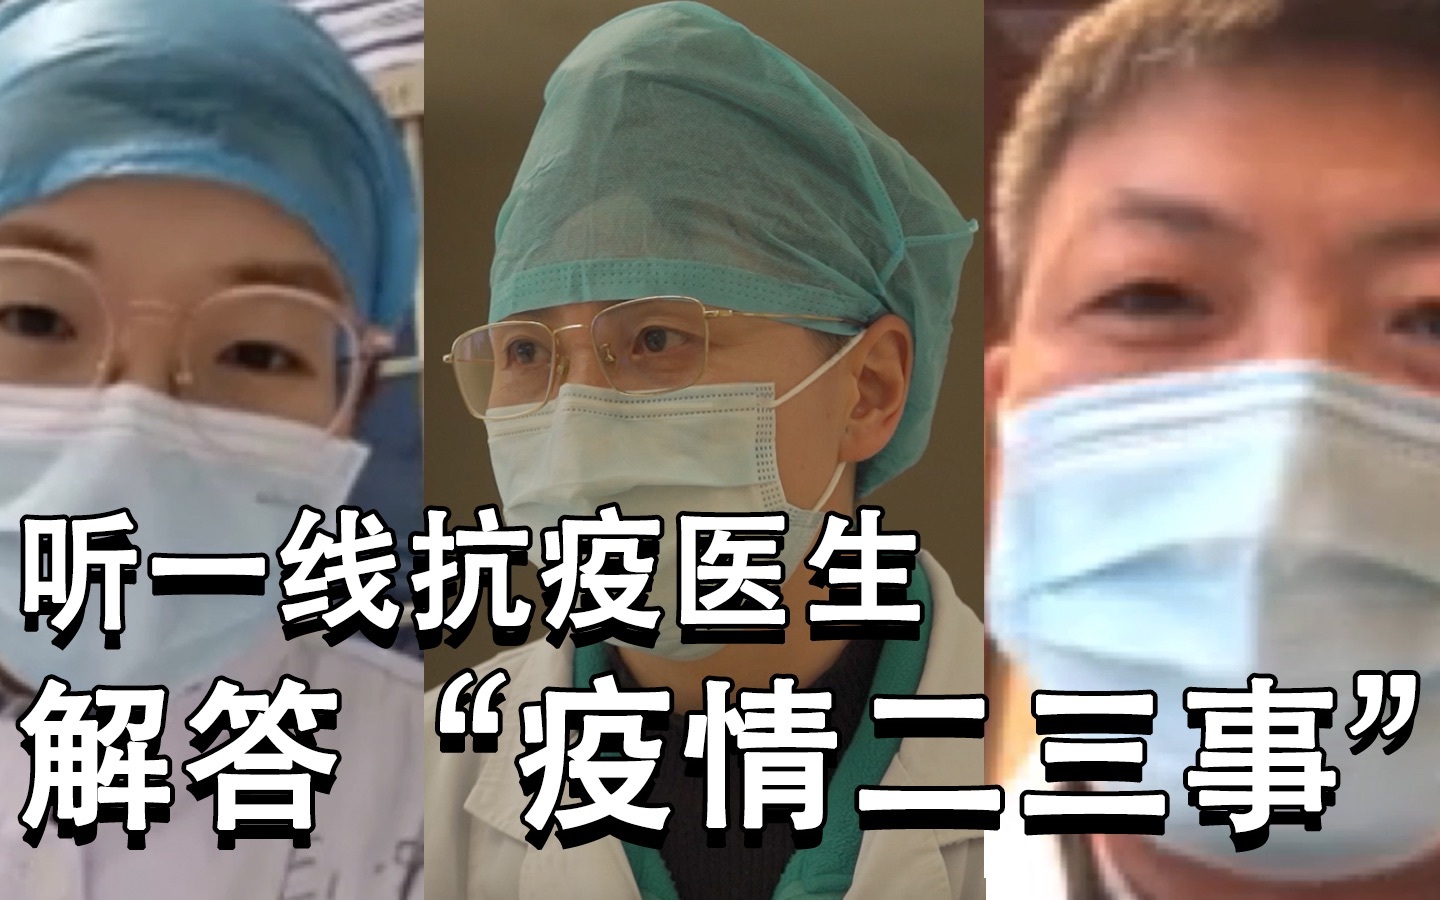 日本网友最想知道的“疫情二三事”，日本导演连线抗疫一线医护人员解答